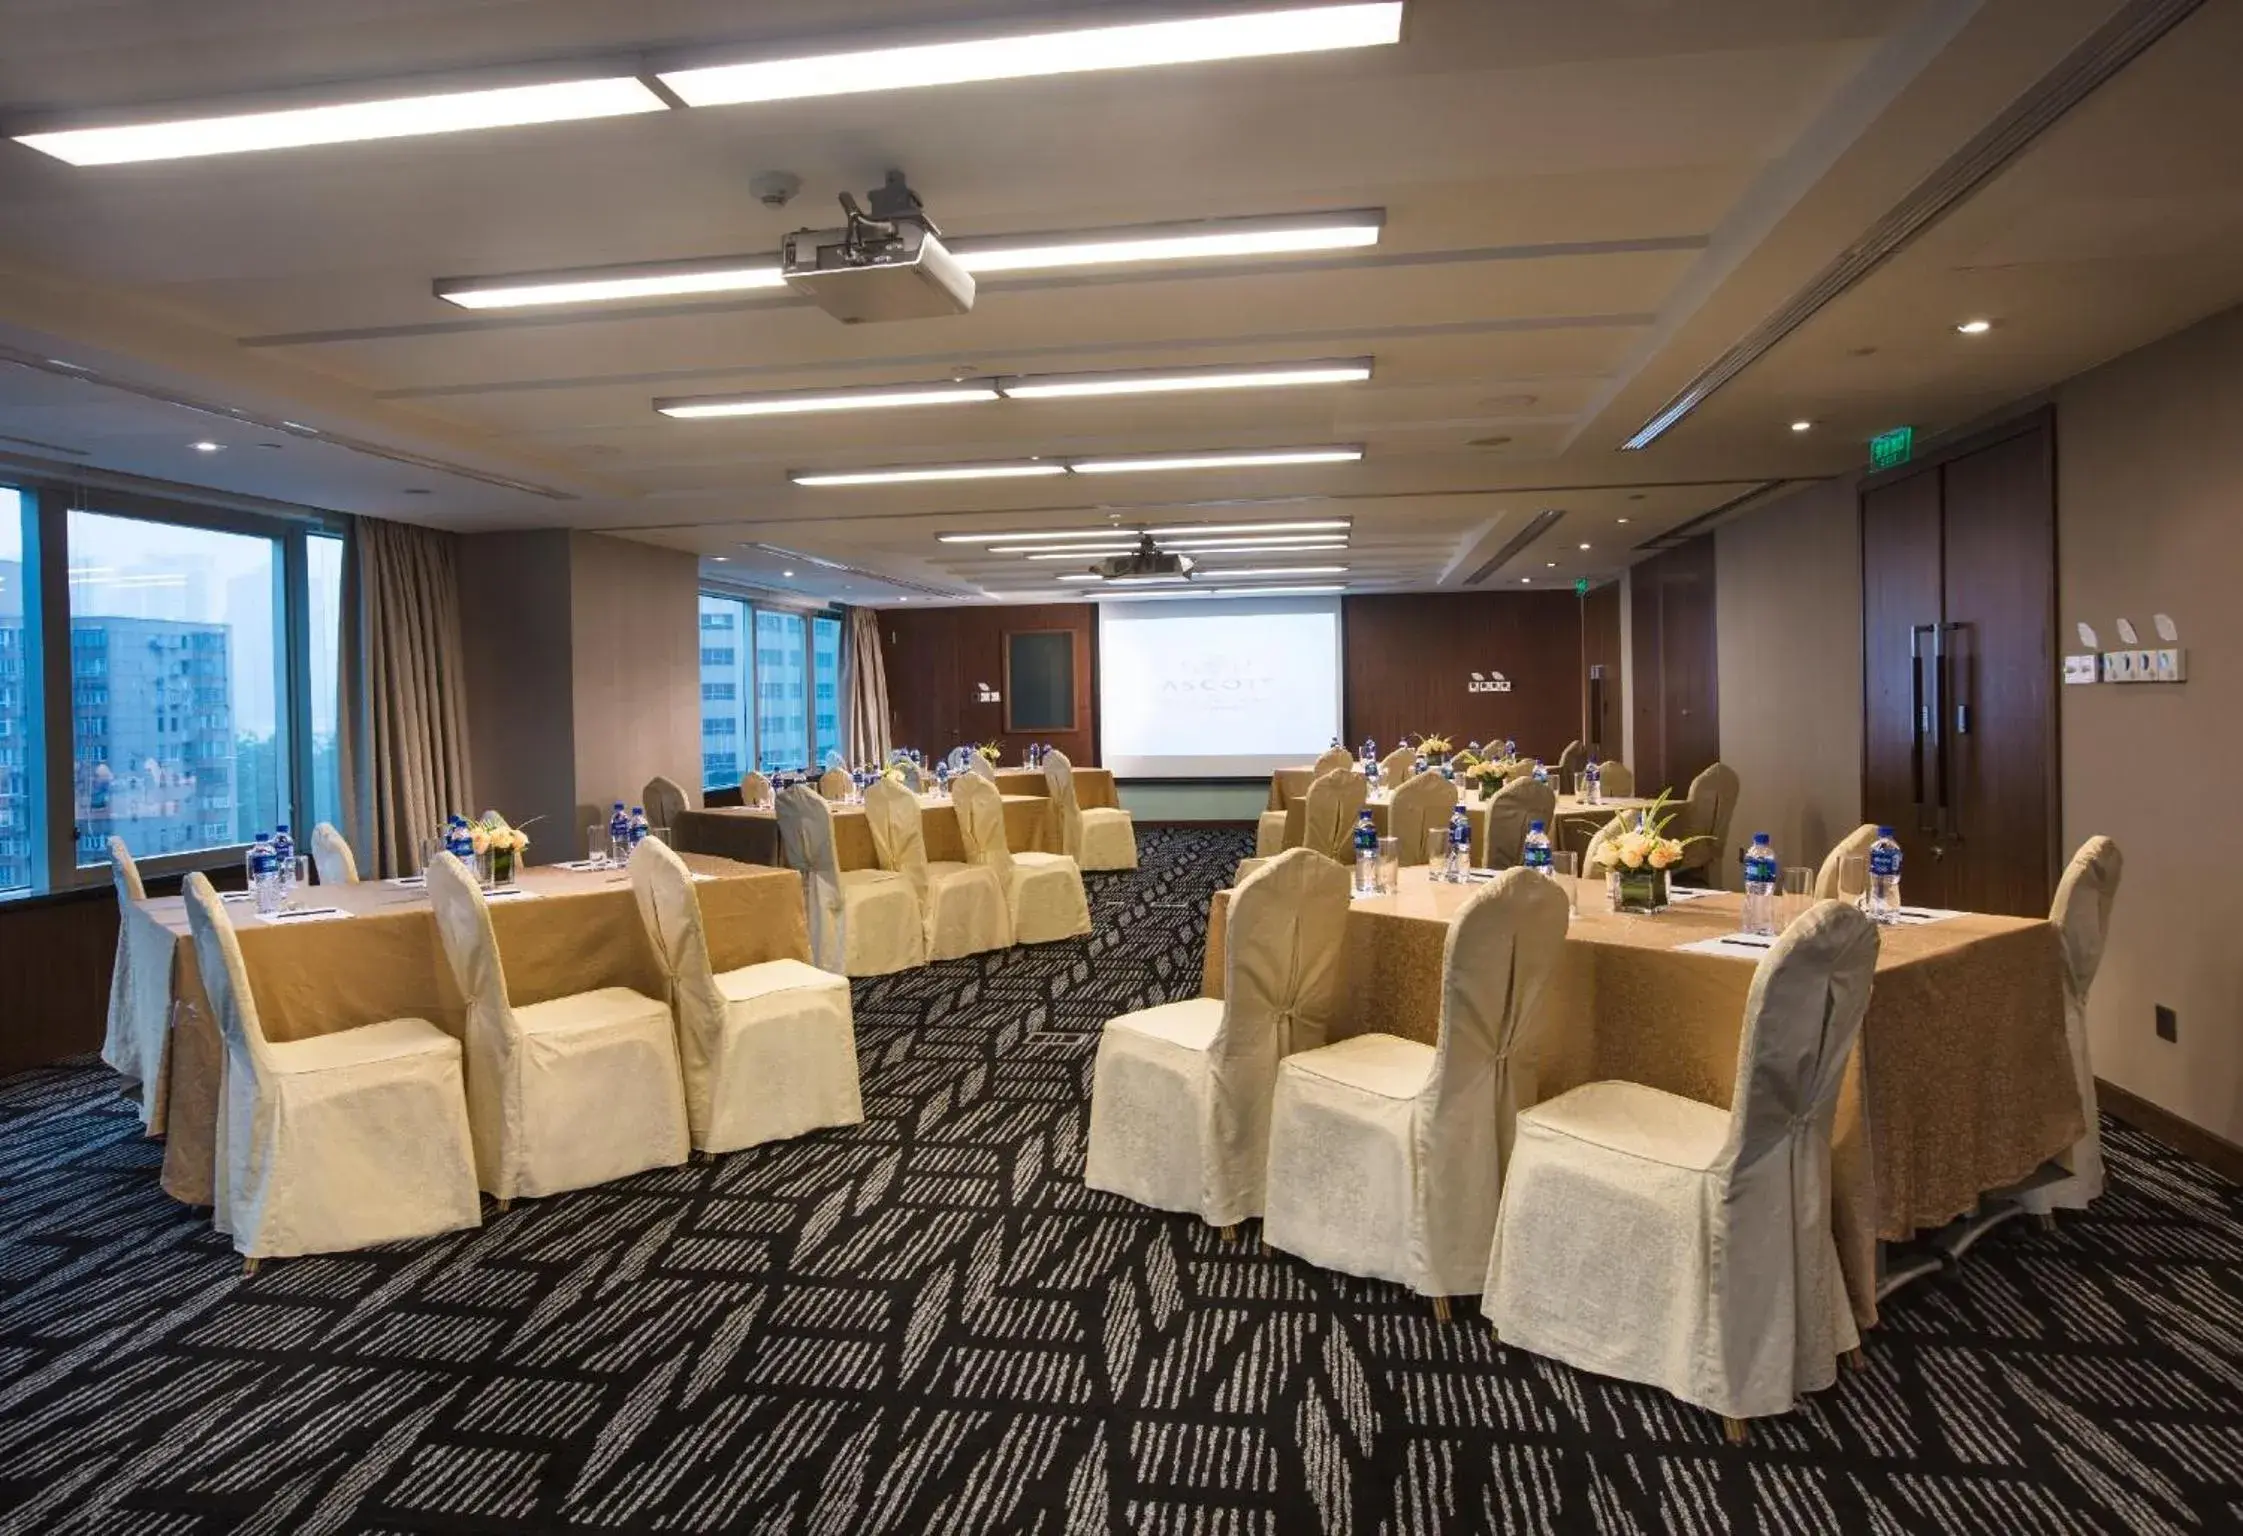 Business facilities, Banquet Facilities in Ascott Huai Hai Road Shanghai